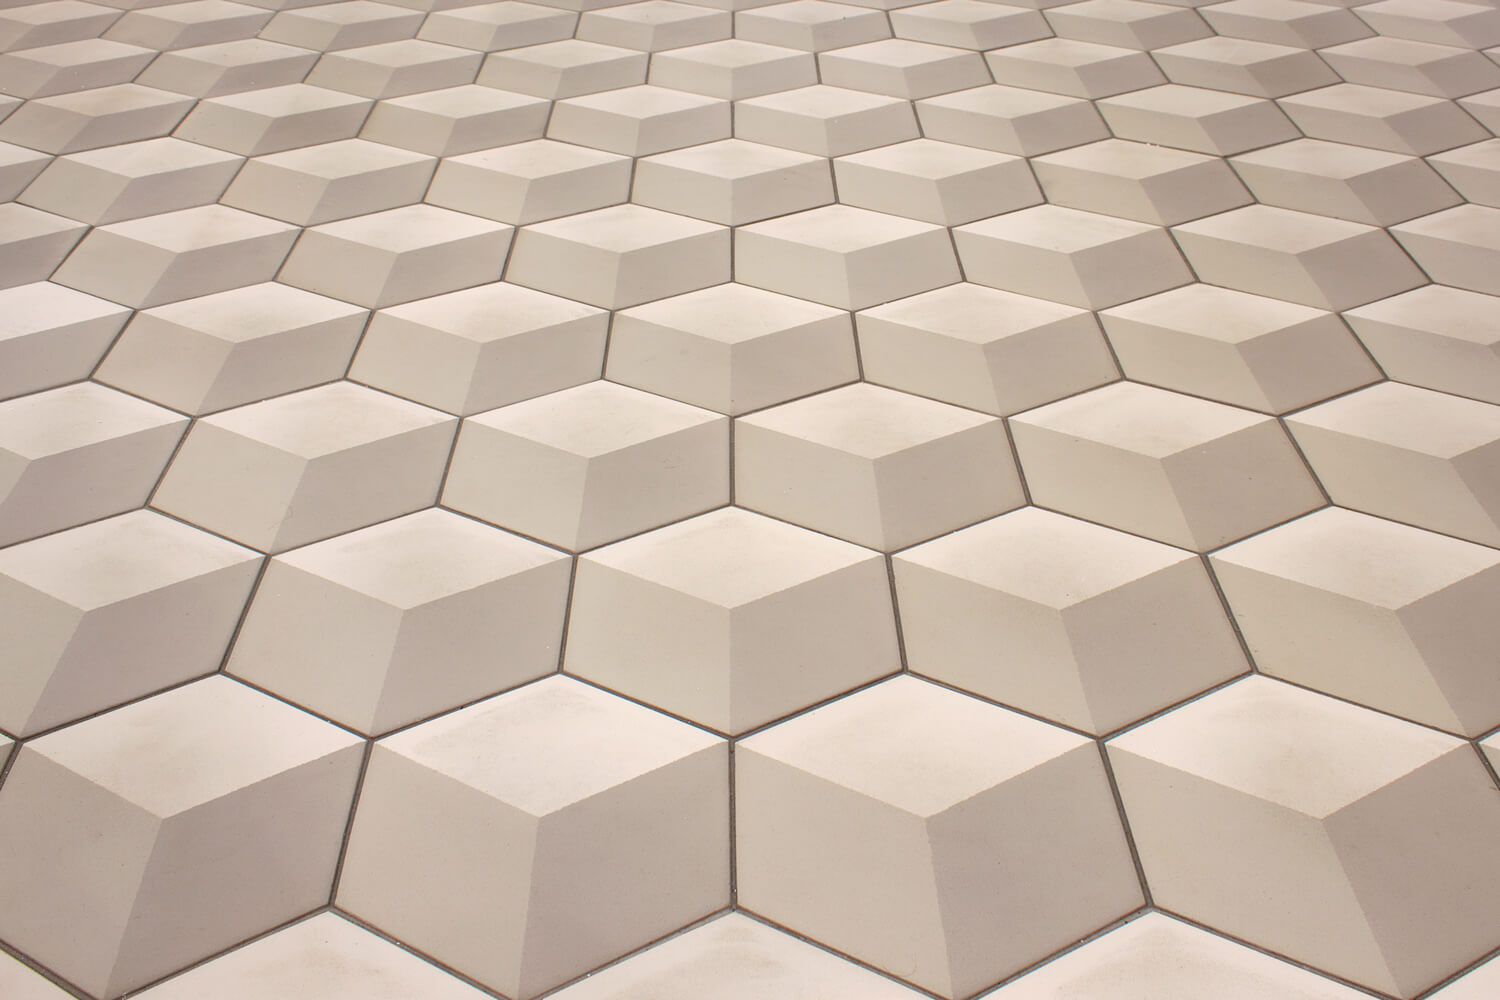 Sechseckige Fliesen, Hexagonal, vintage, 3D-Muster in ocker, beige und sandfarben, SF 317 von Golem